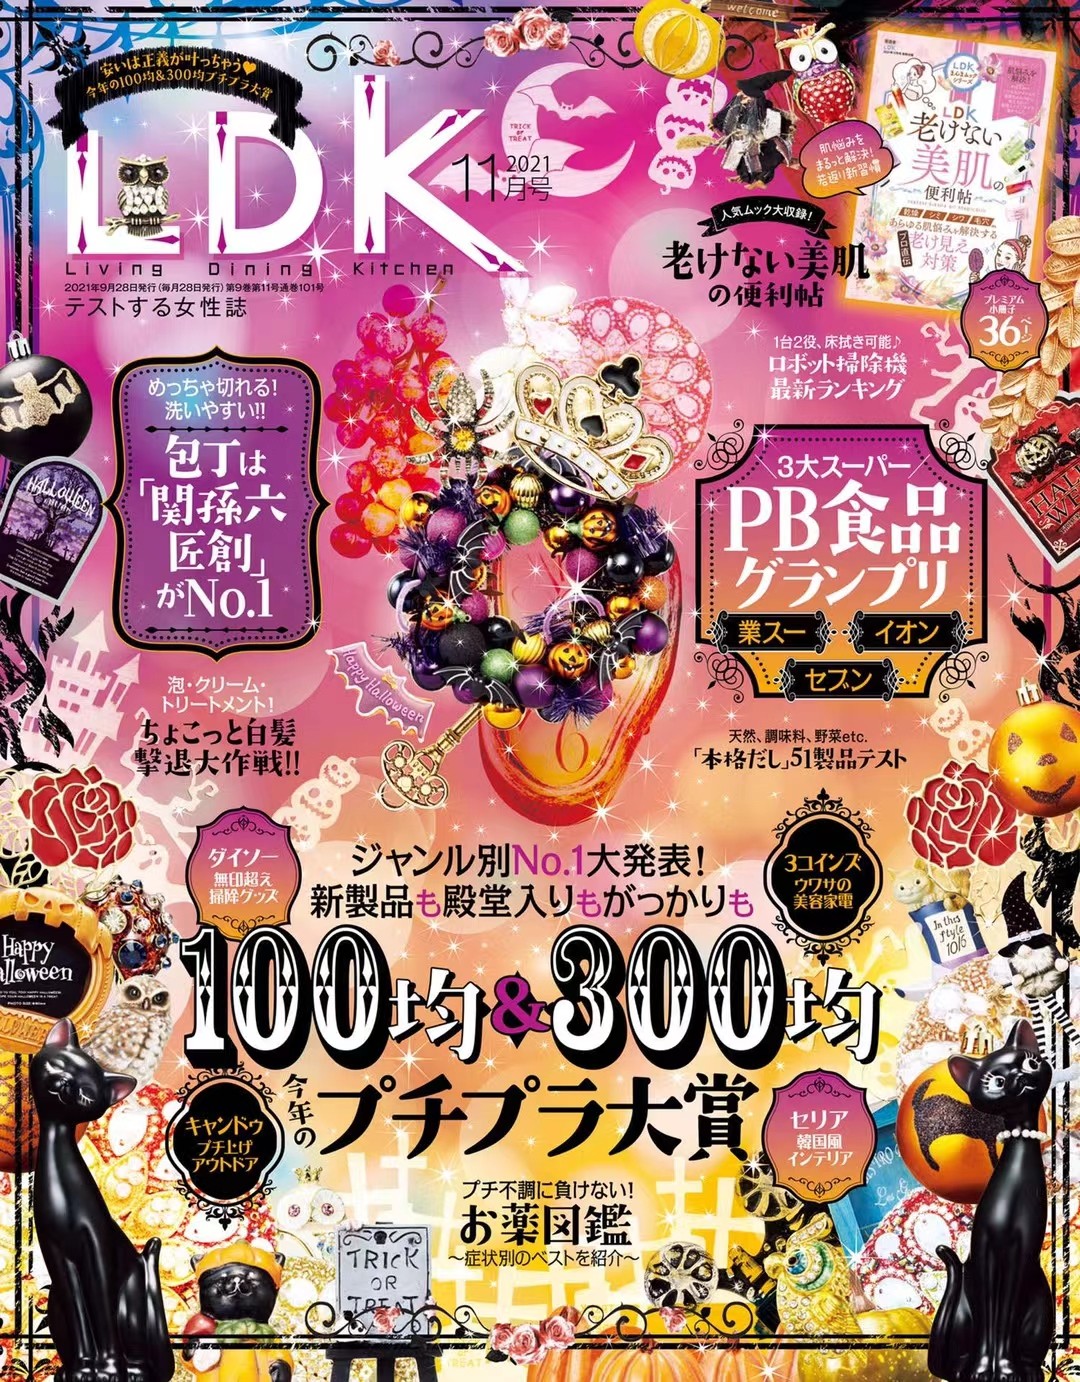 【瑜伽健身上新】 《LDK》 2021年合集日本时尚美妆护肤穿搭美食杂志